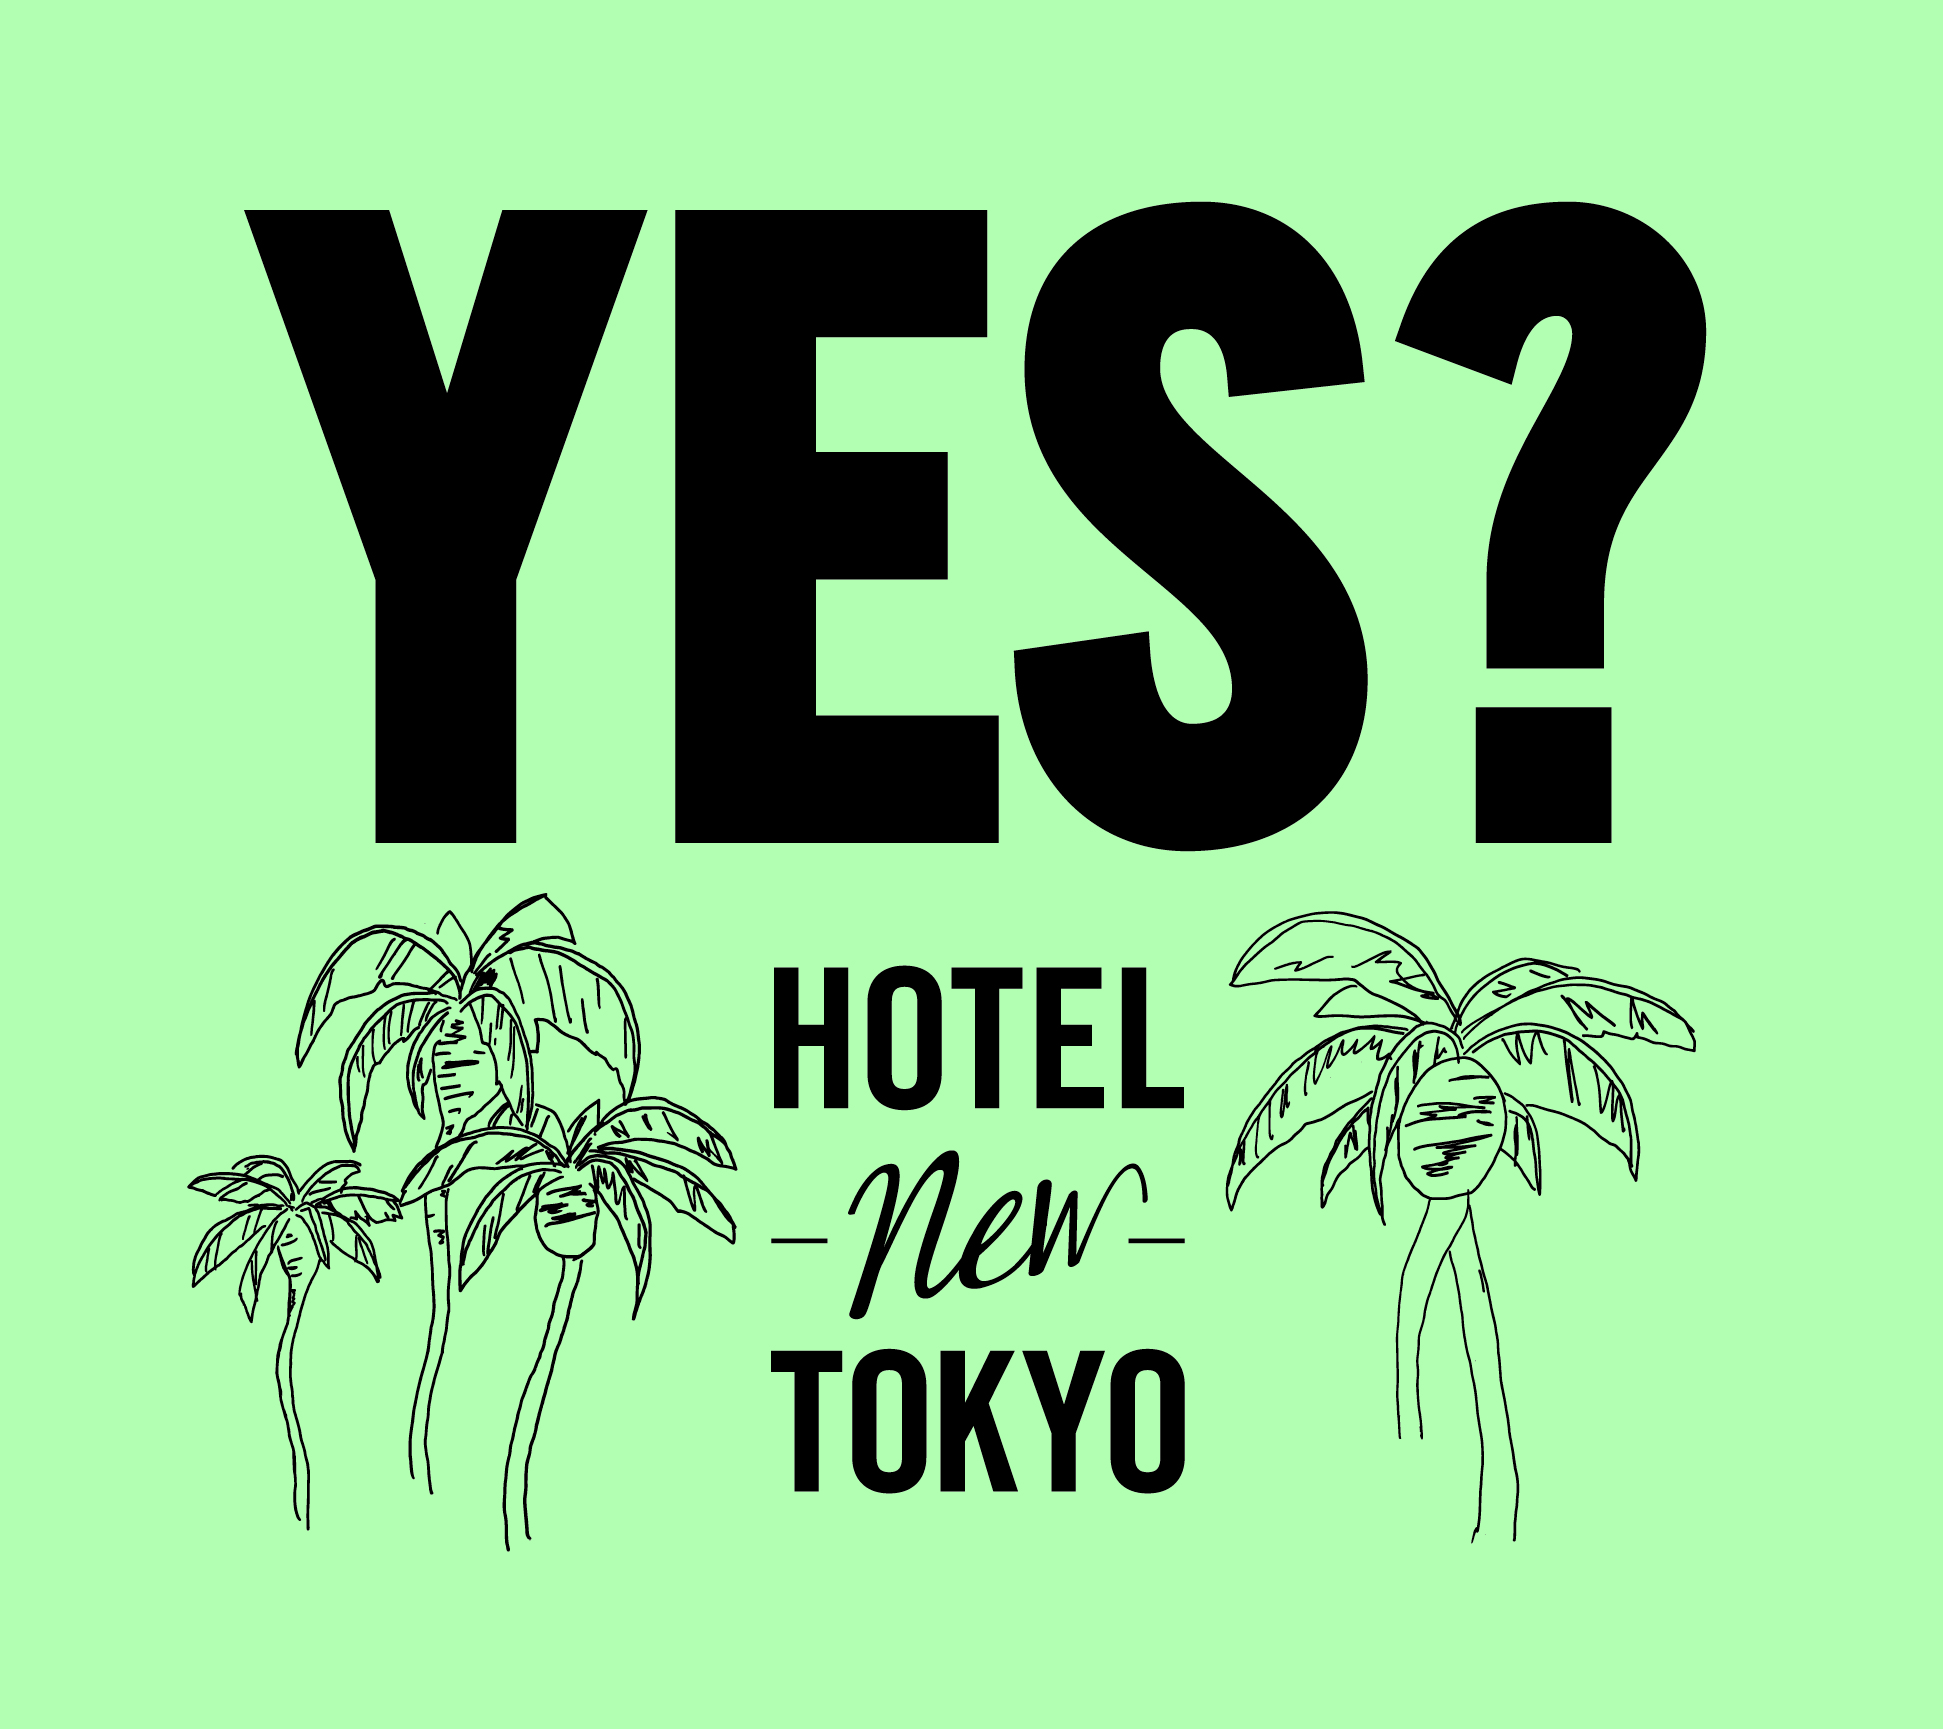 ホテルニュートーキョー『yes?』本日店頭発売日です。